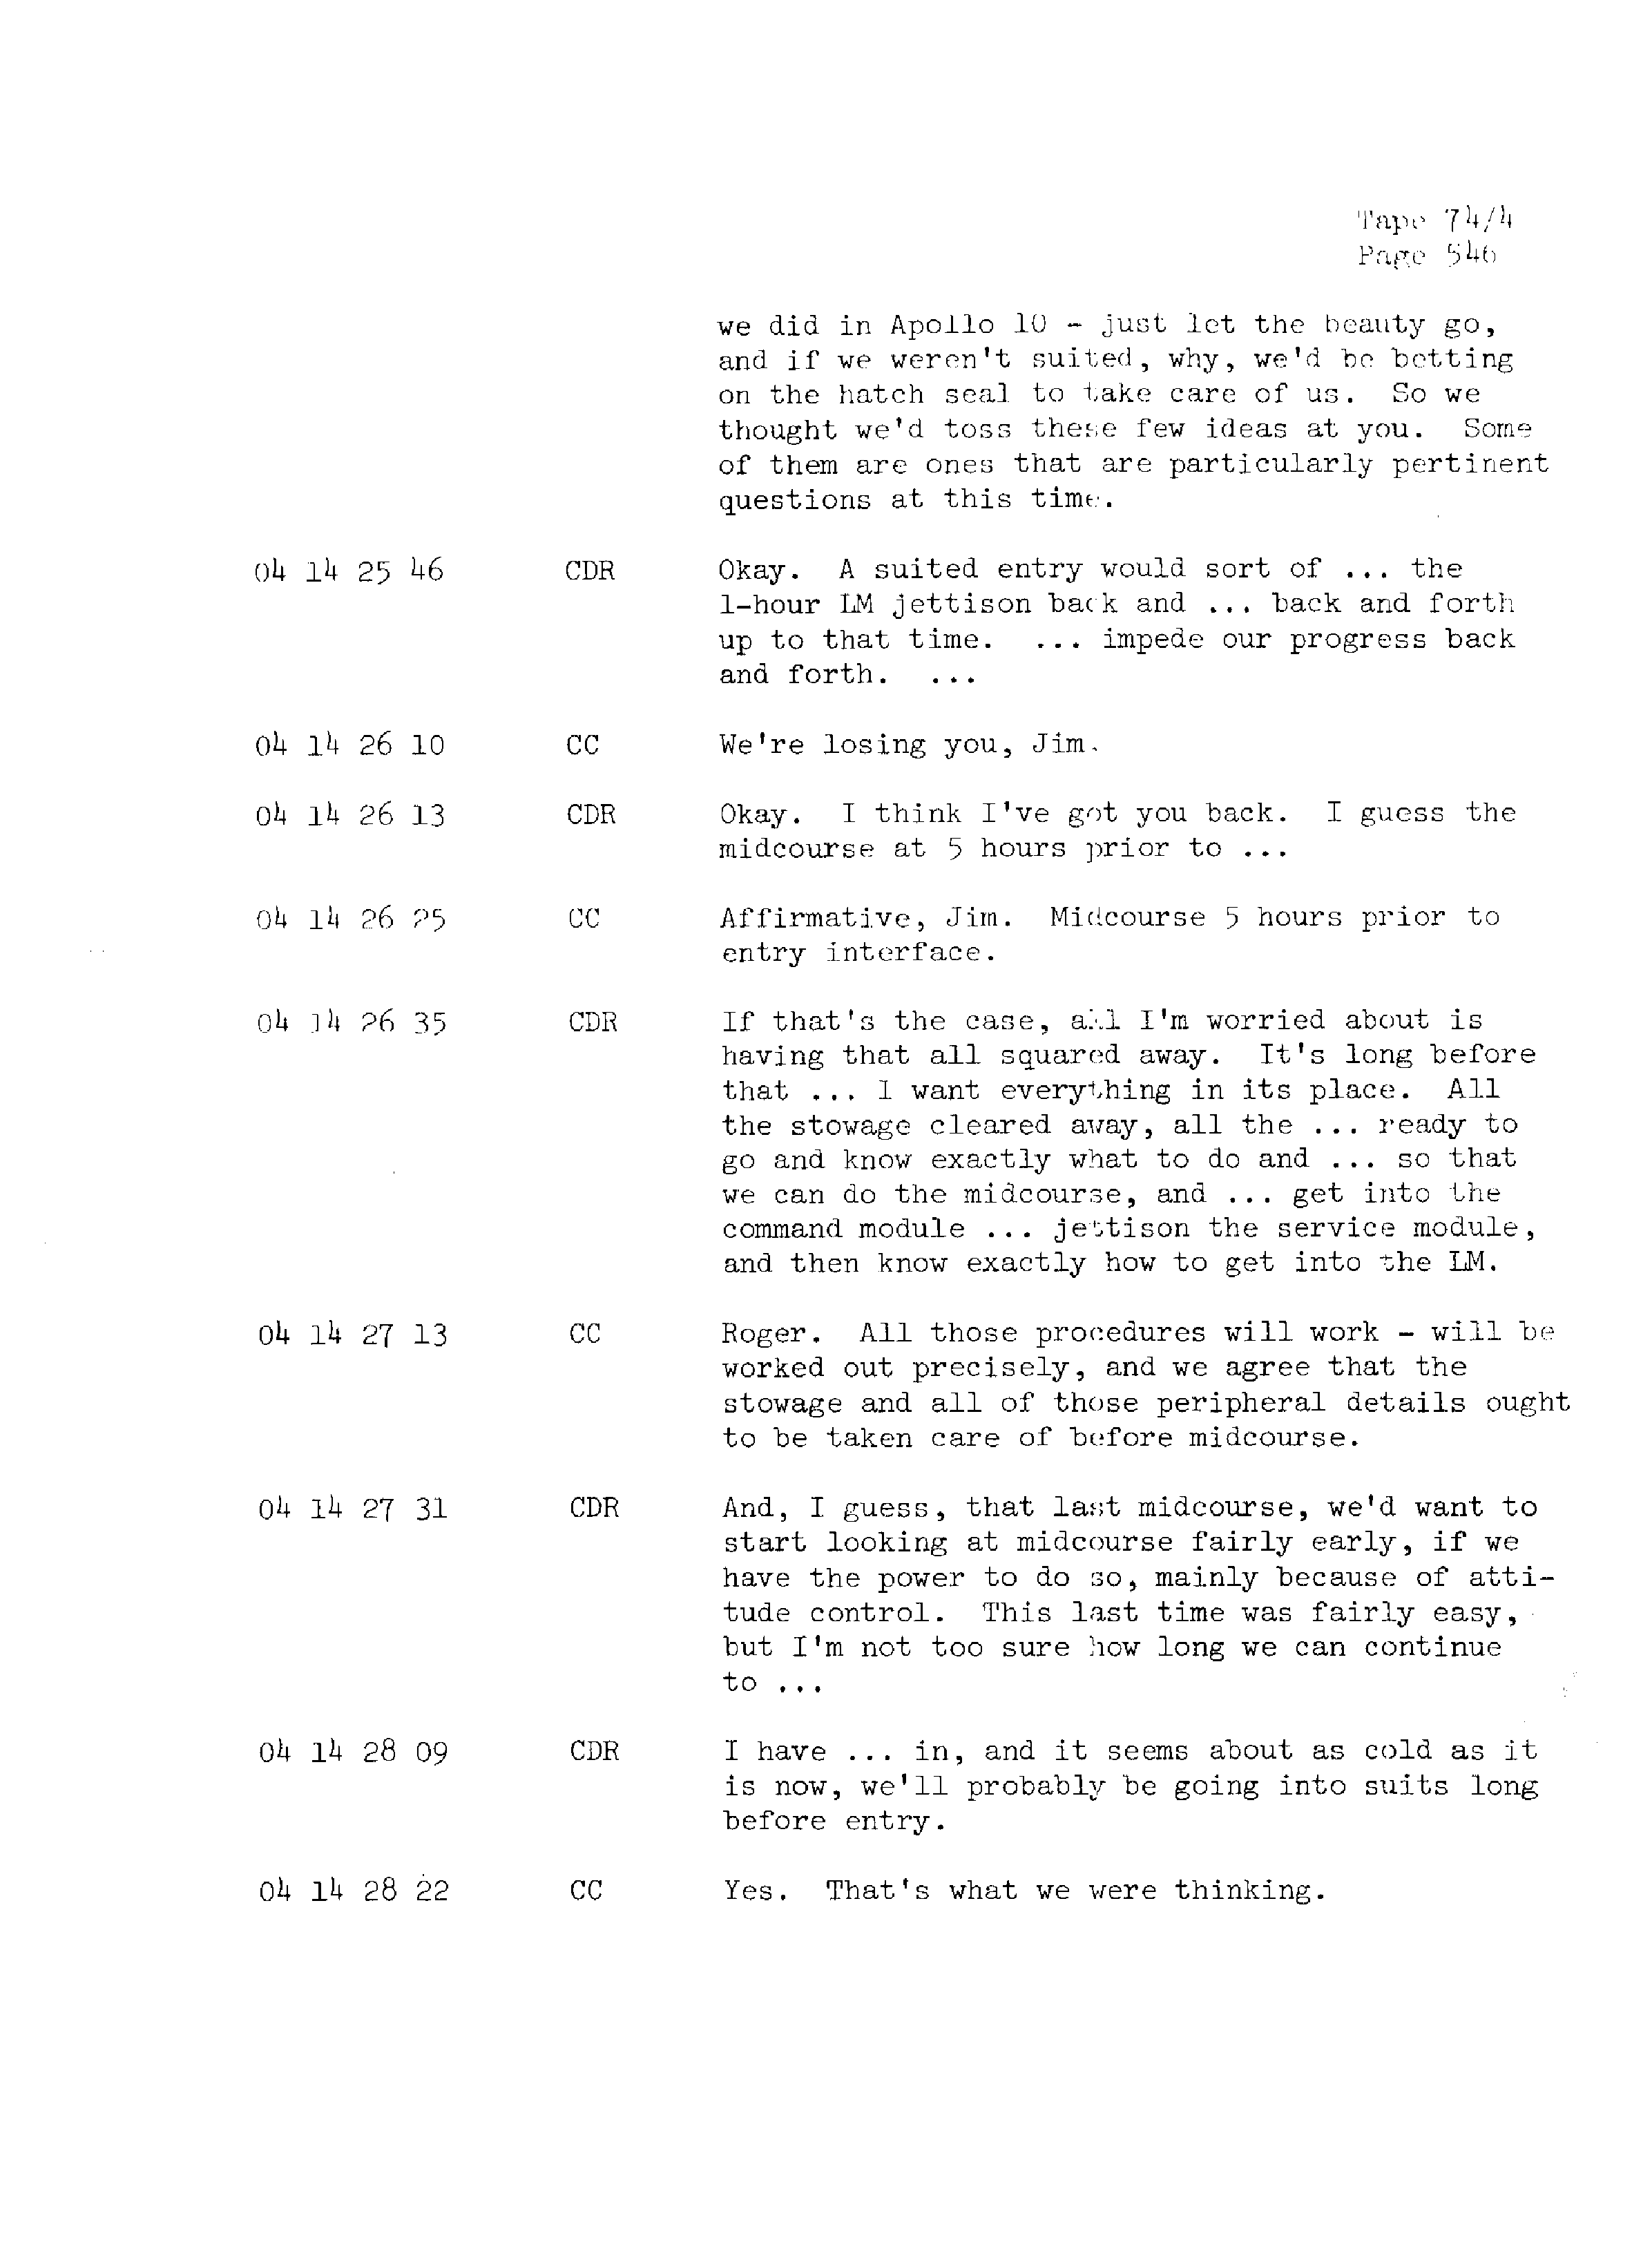 Page 553 of Apollo 13’s original transcript